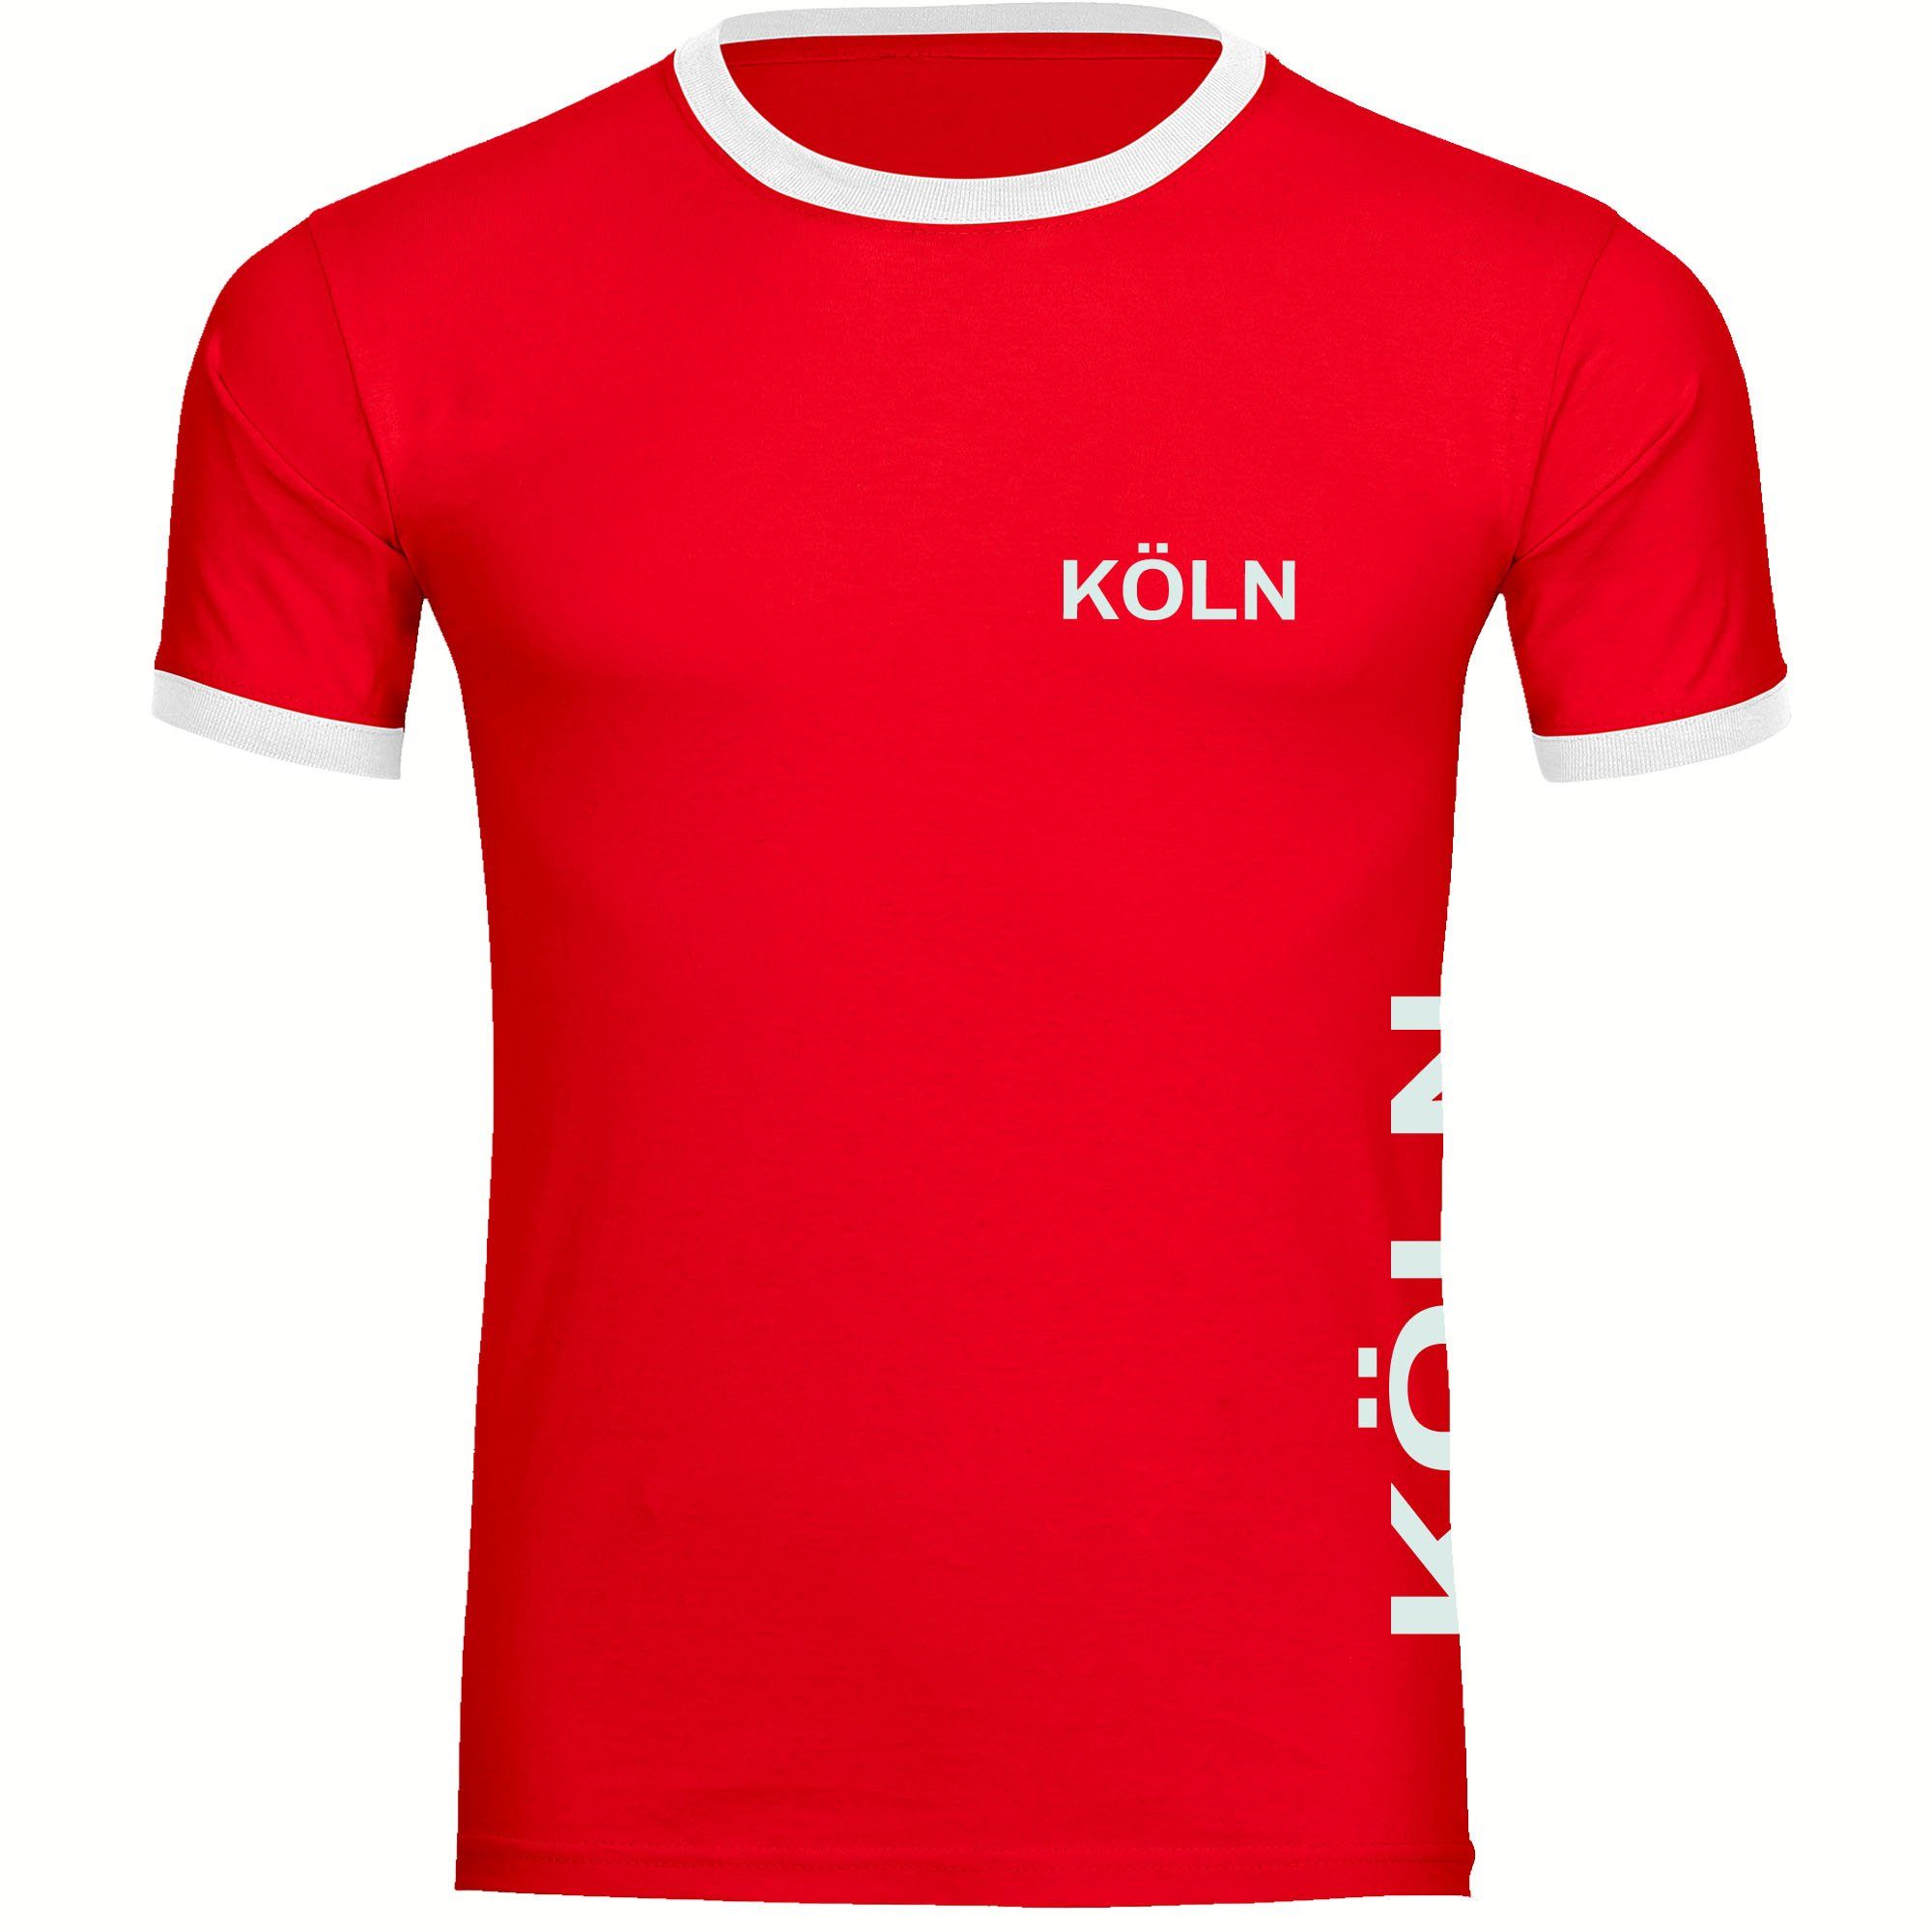 multifanshop T-Shirt Kontrast Köln - Brust & Seite - Männer